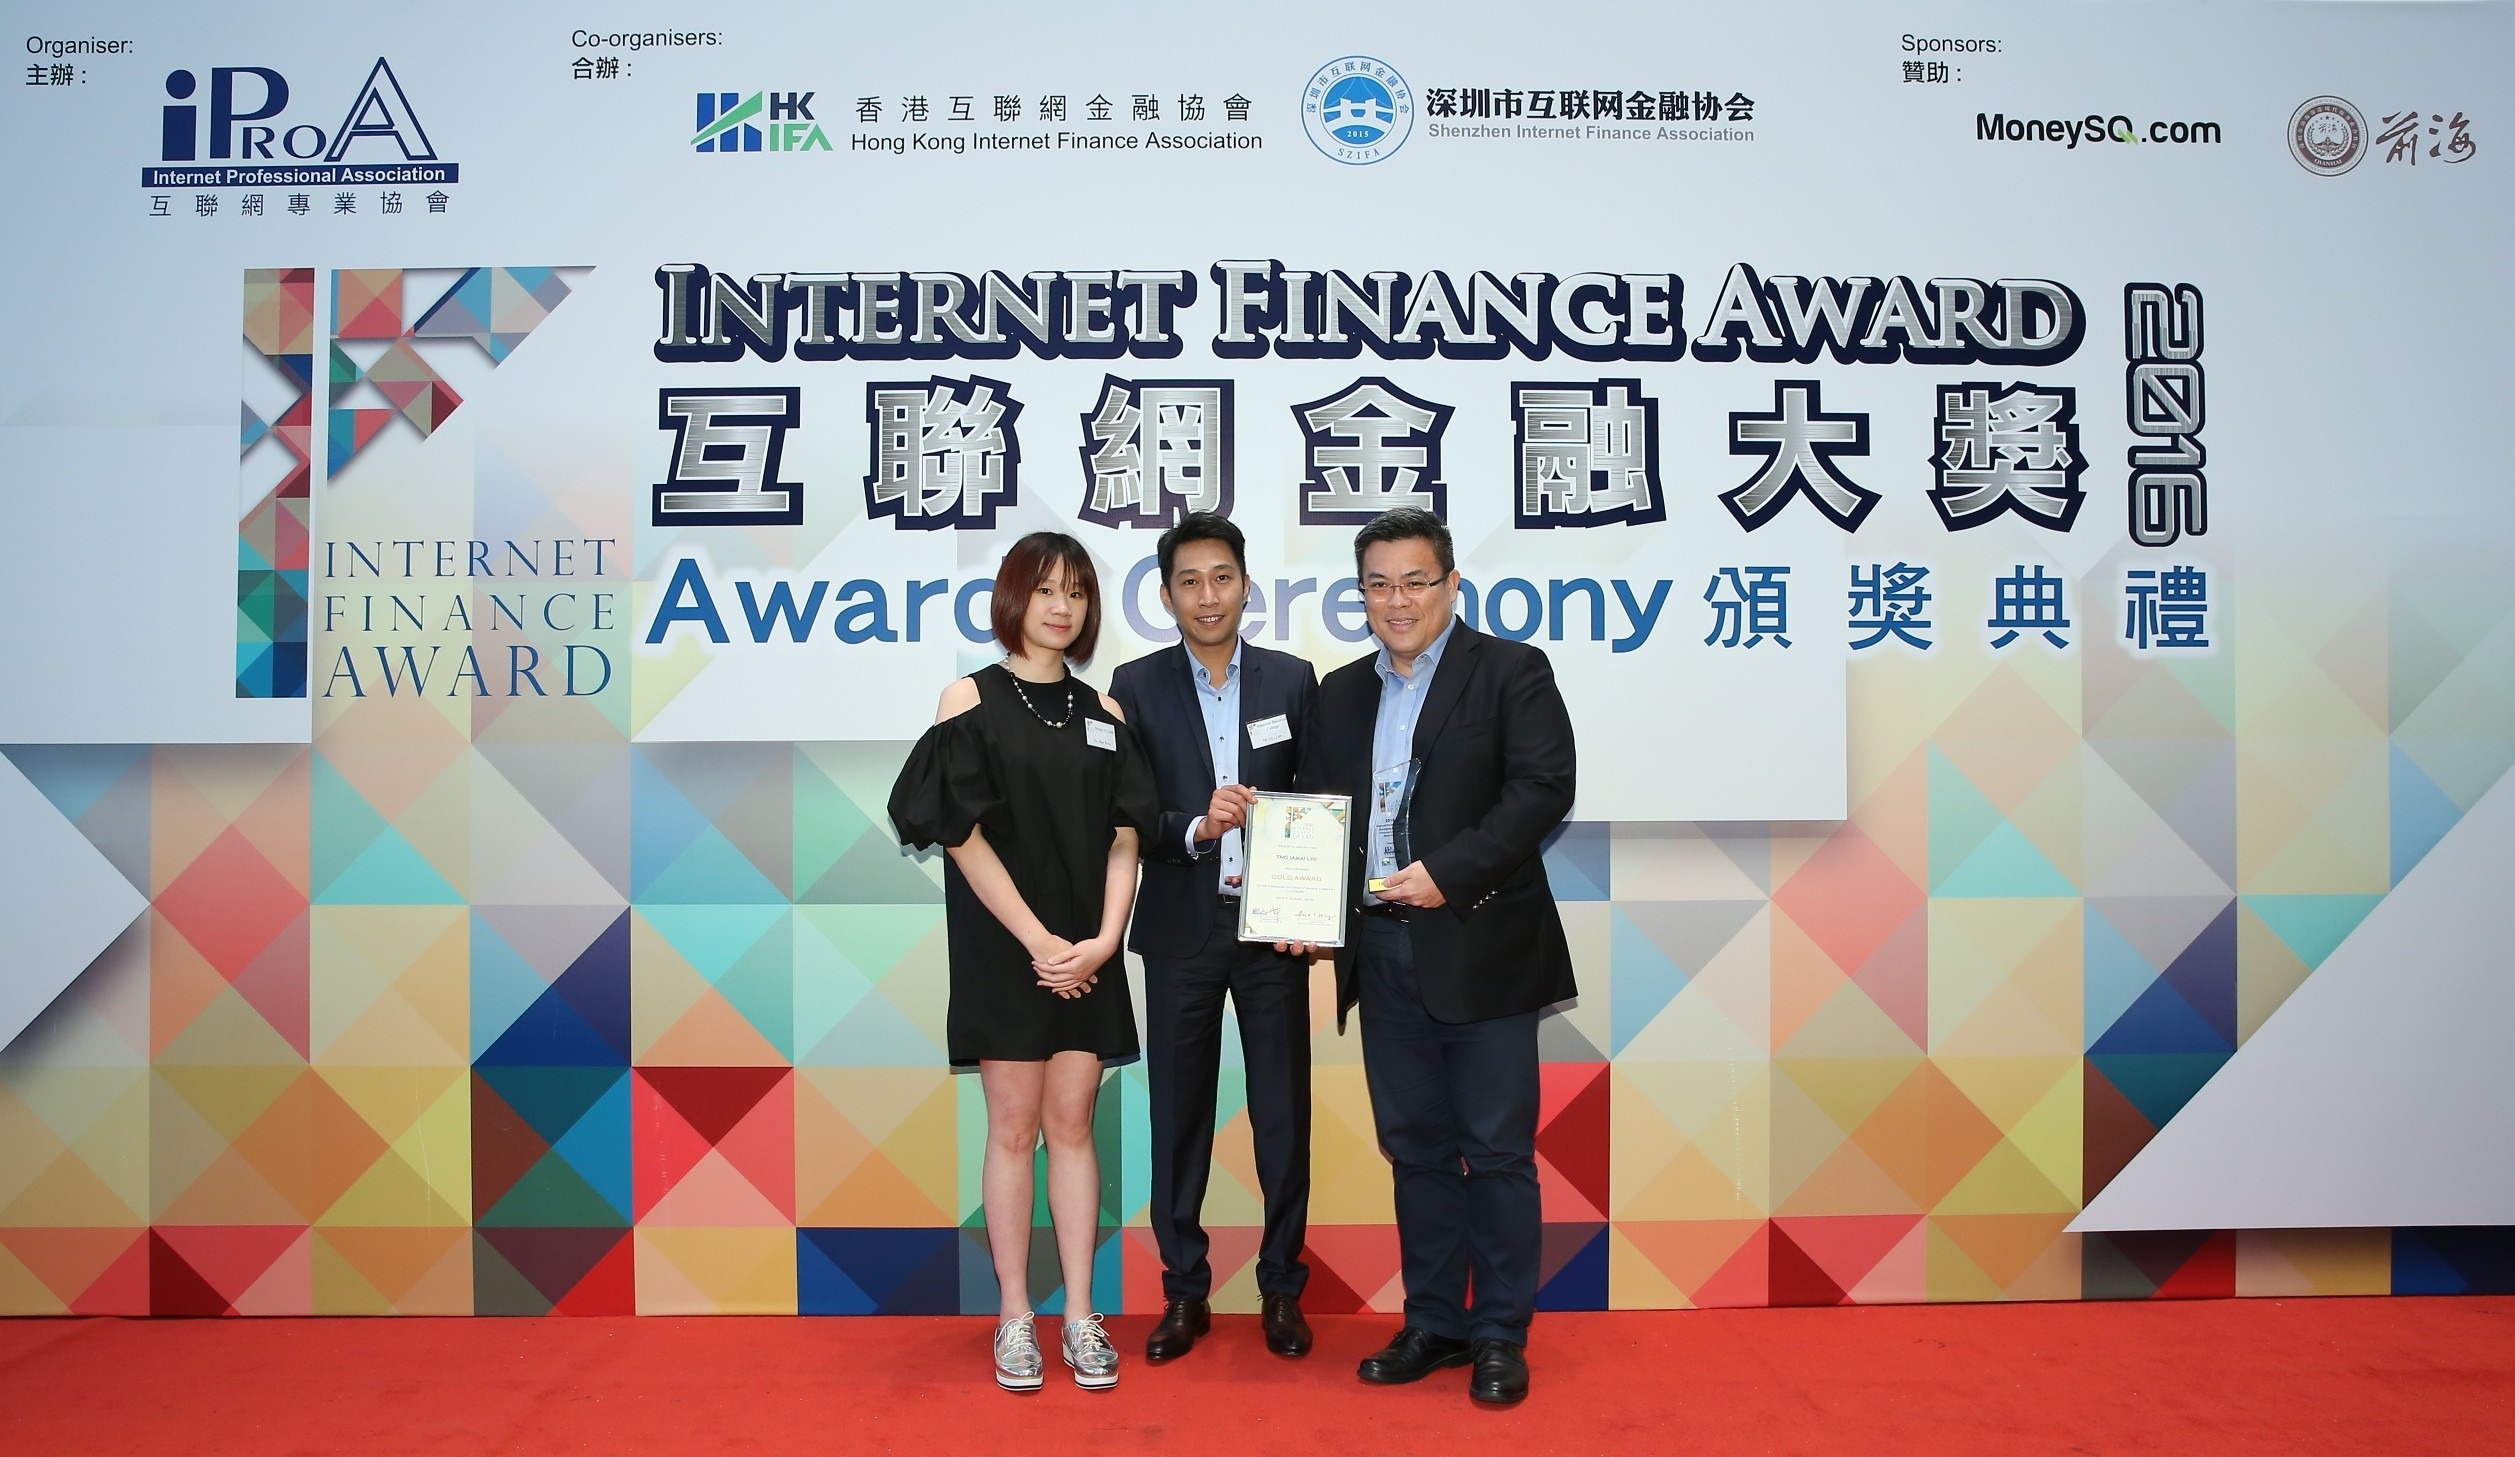 TNG 奪首屆《互聯網金融大獎》 新興互聯網金融企業金獎